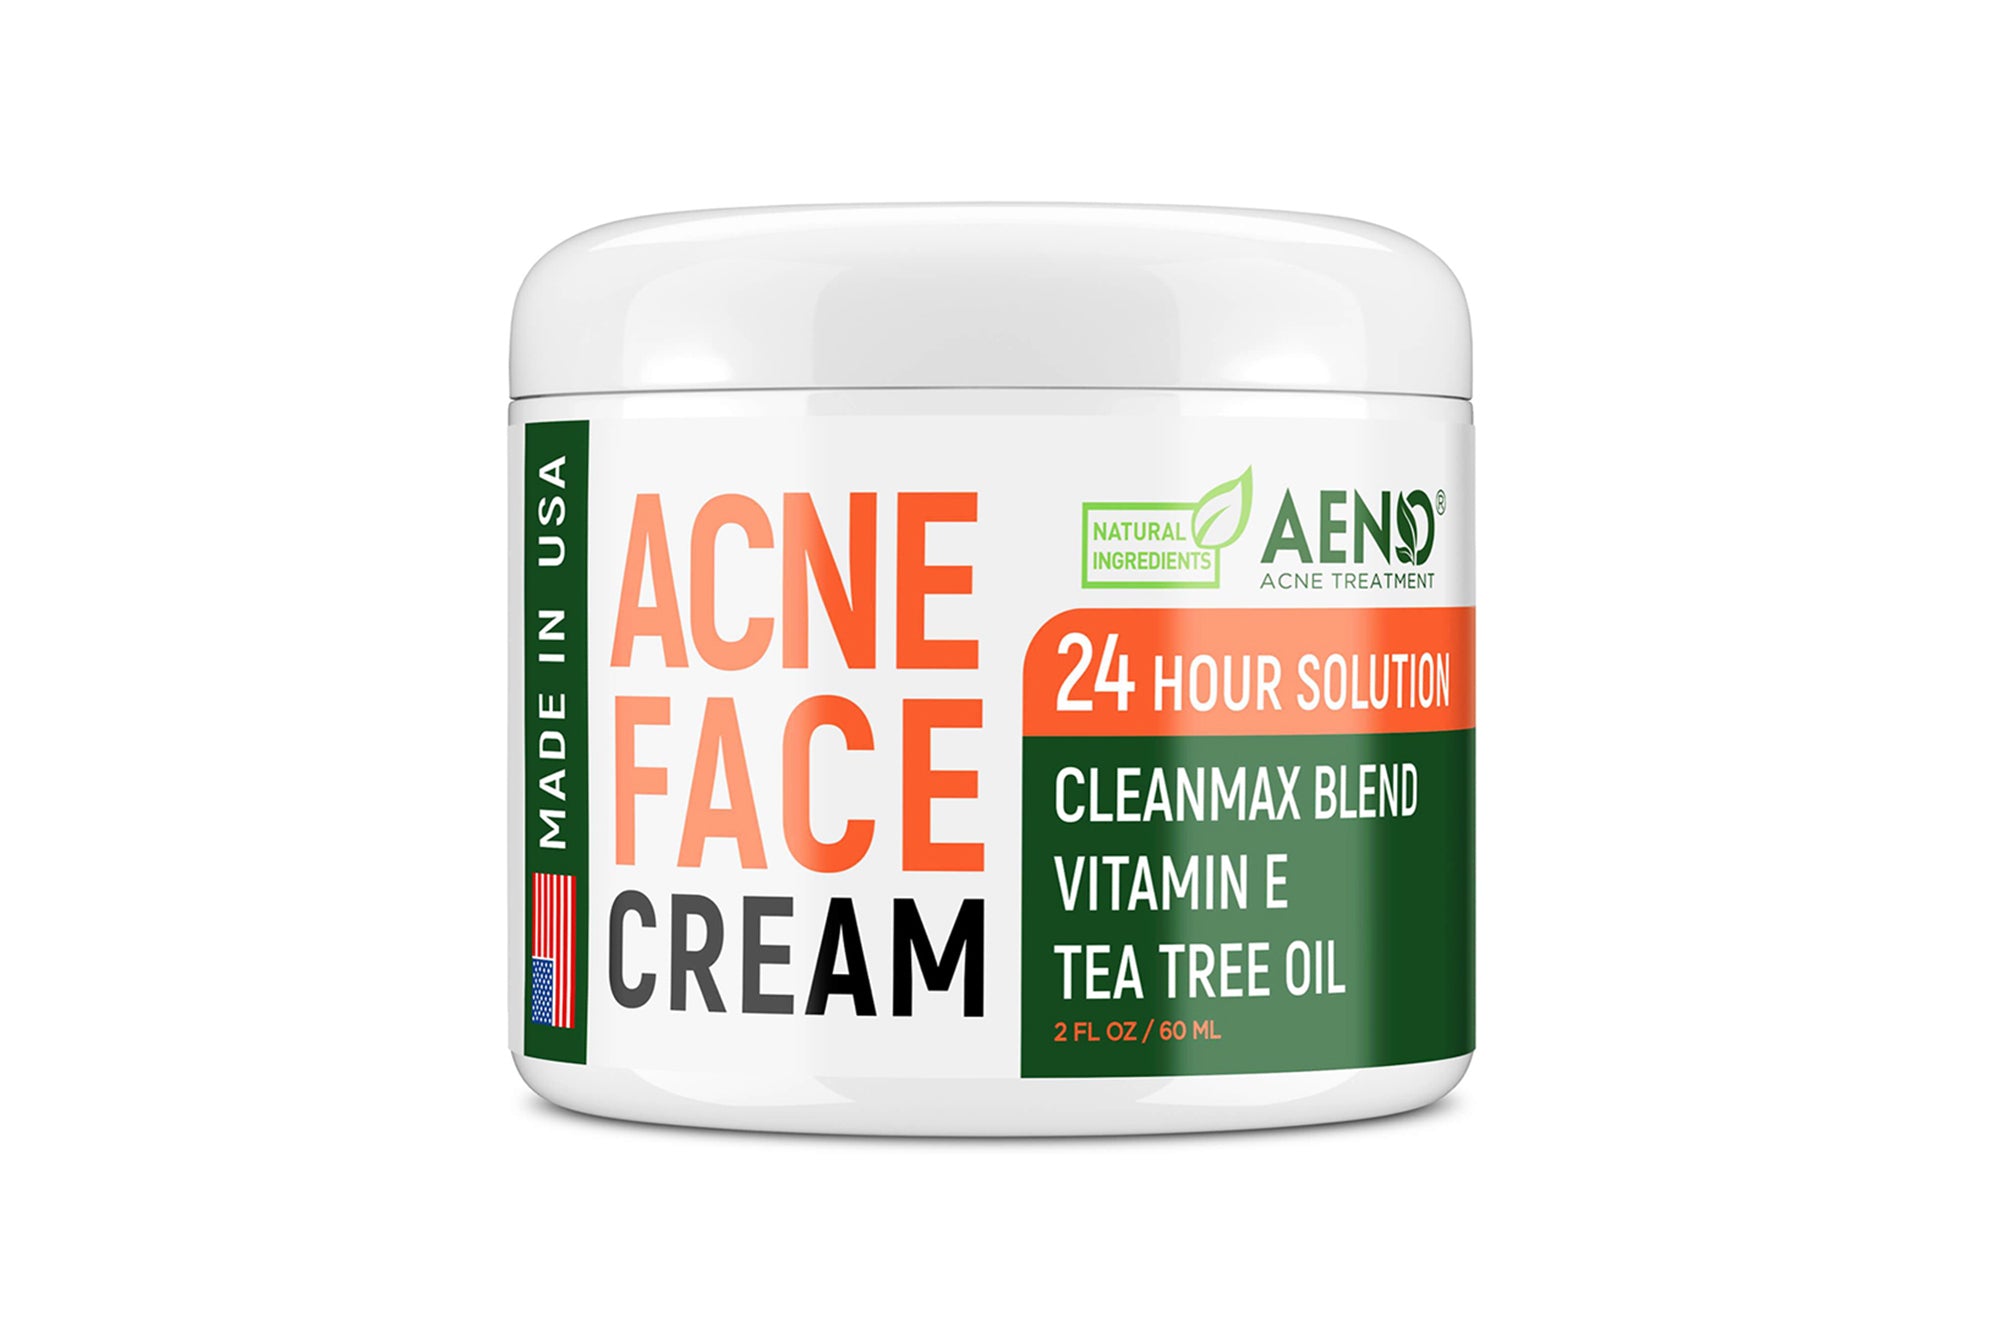 aeno acne face cream